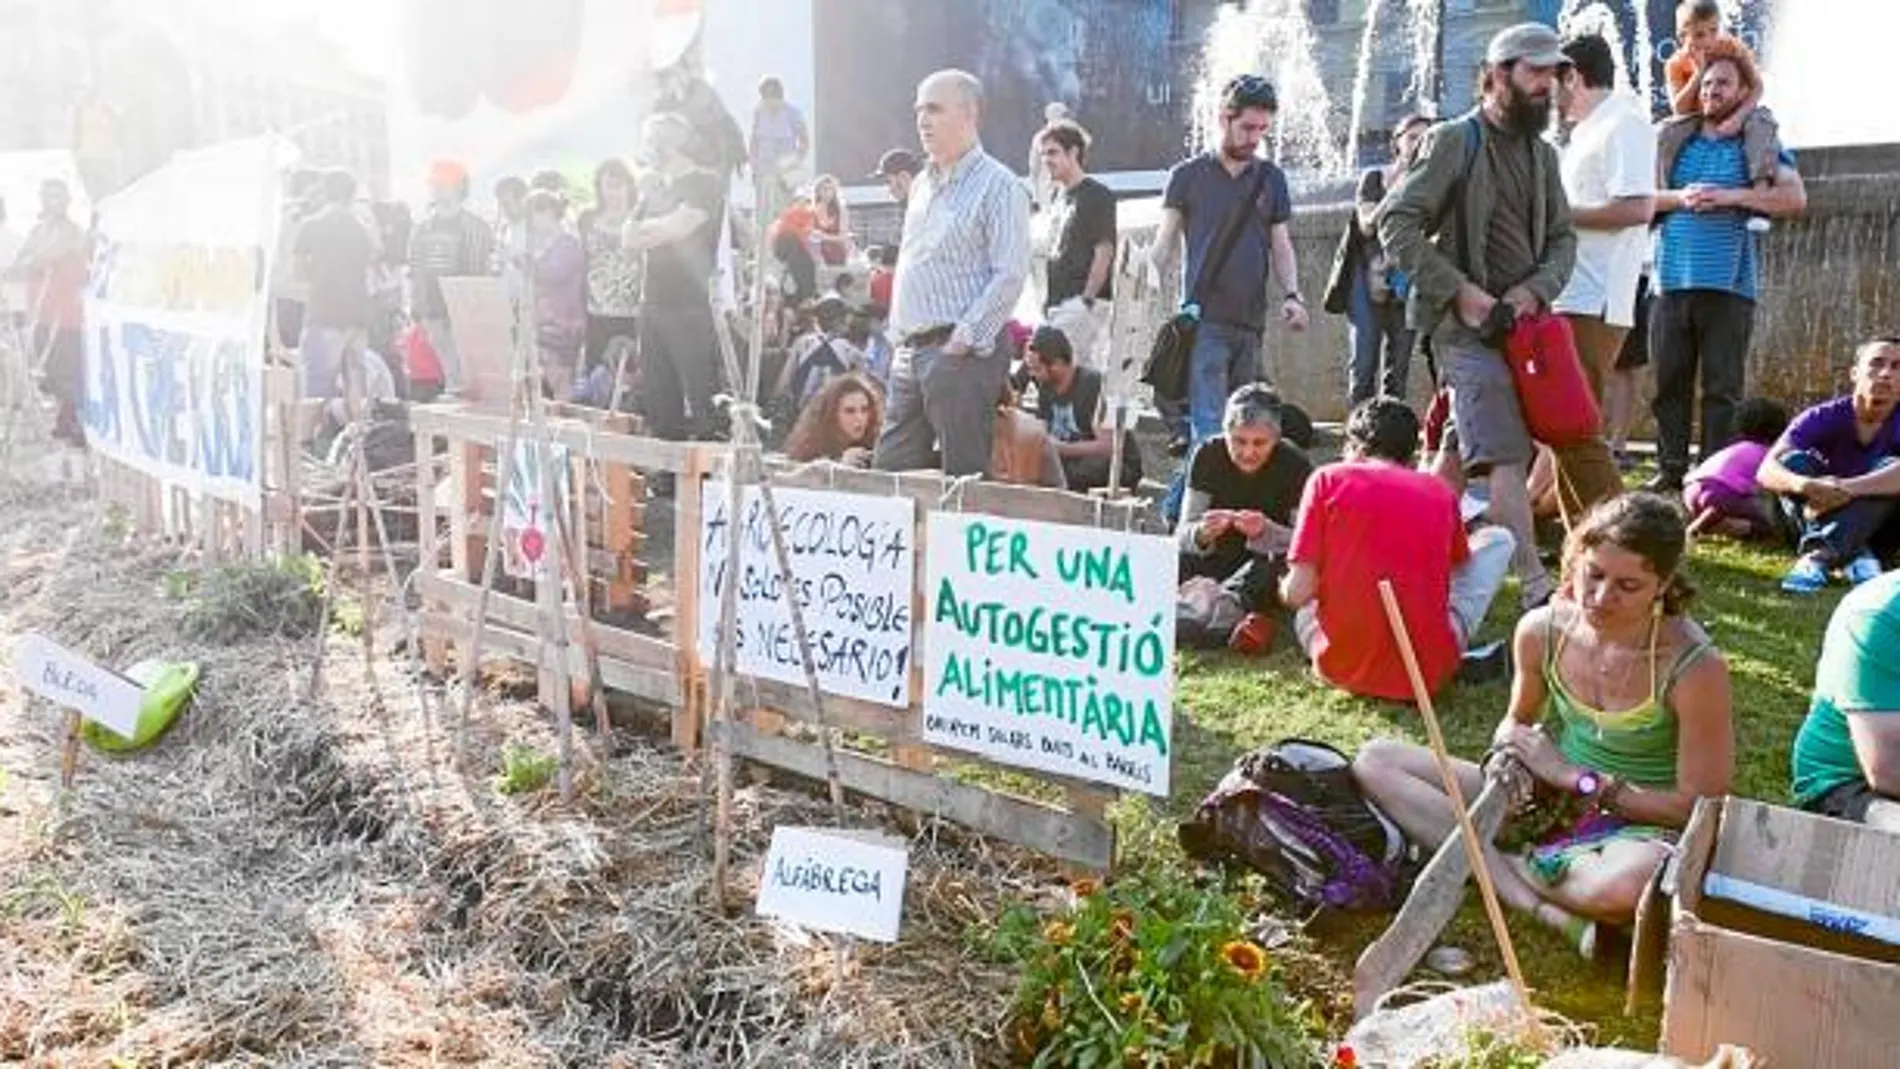 Los indignados amenazan con volver a acampar en la plaza Cataluña